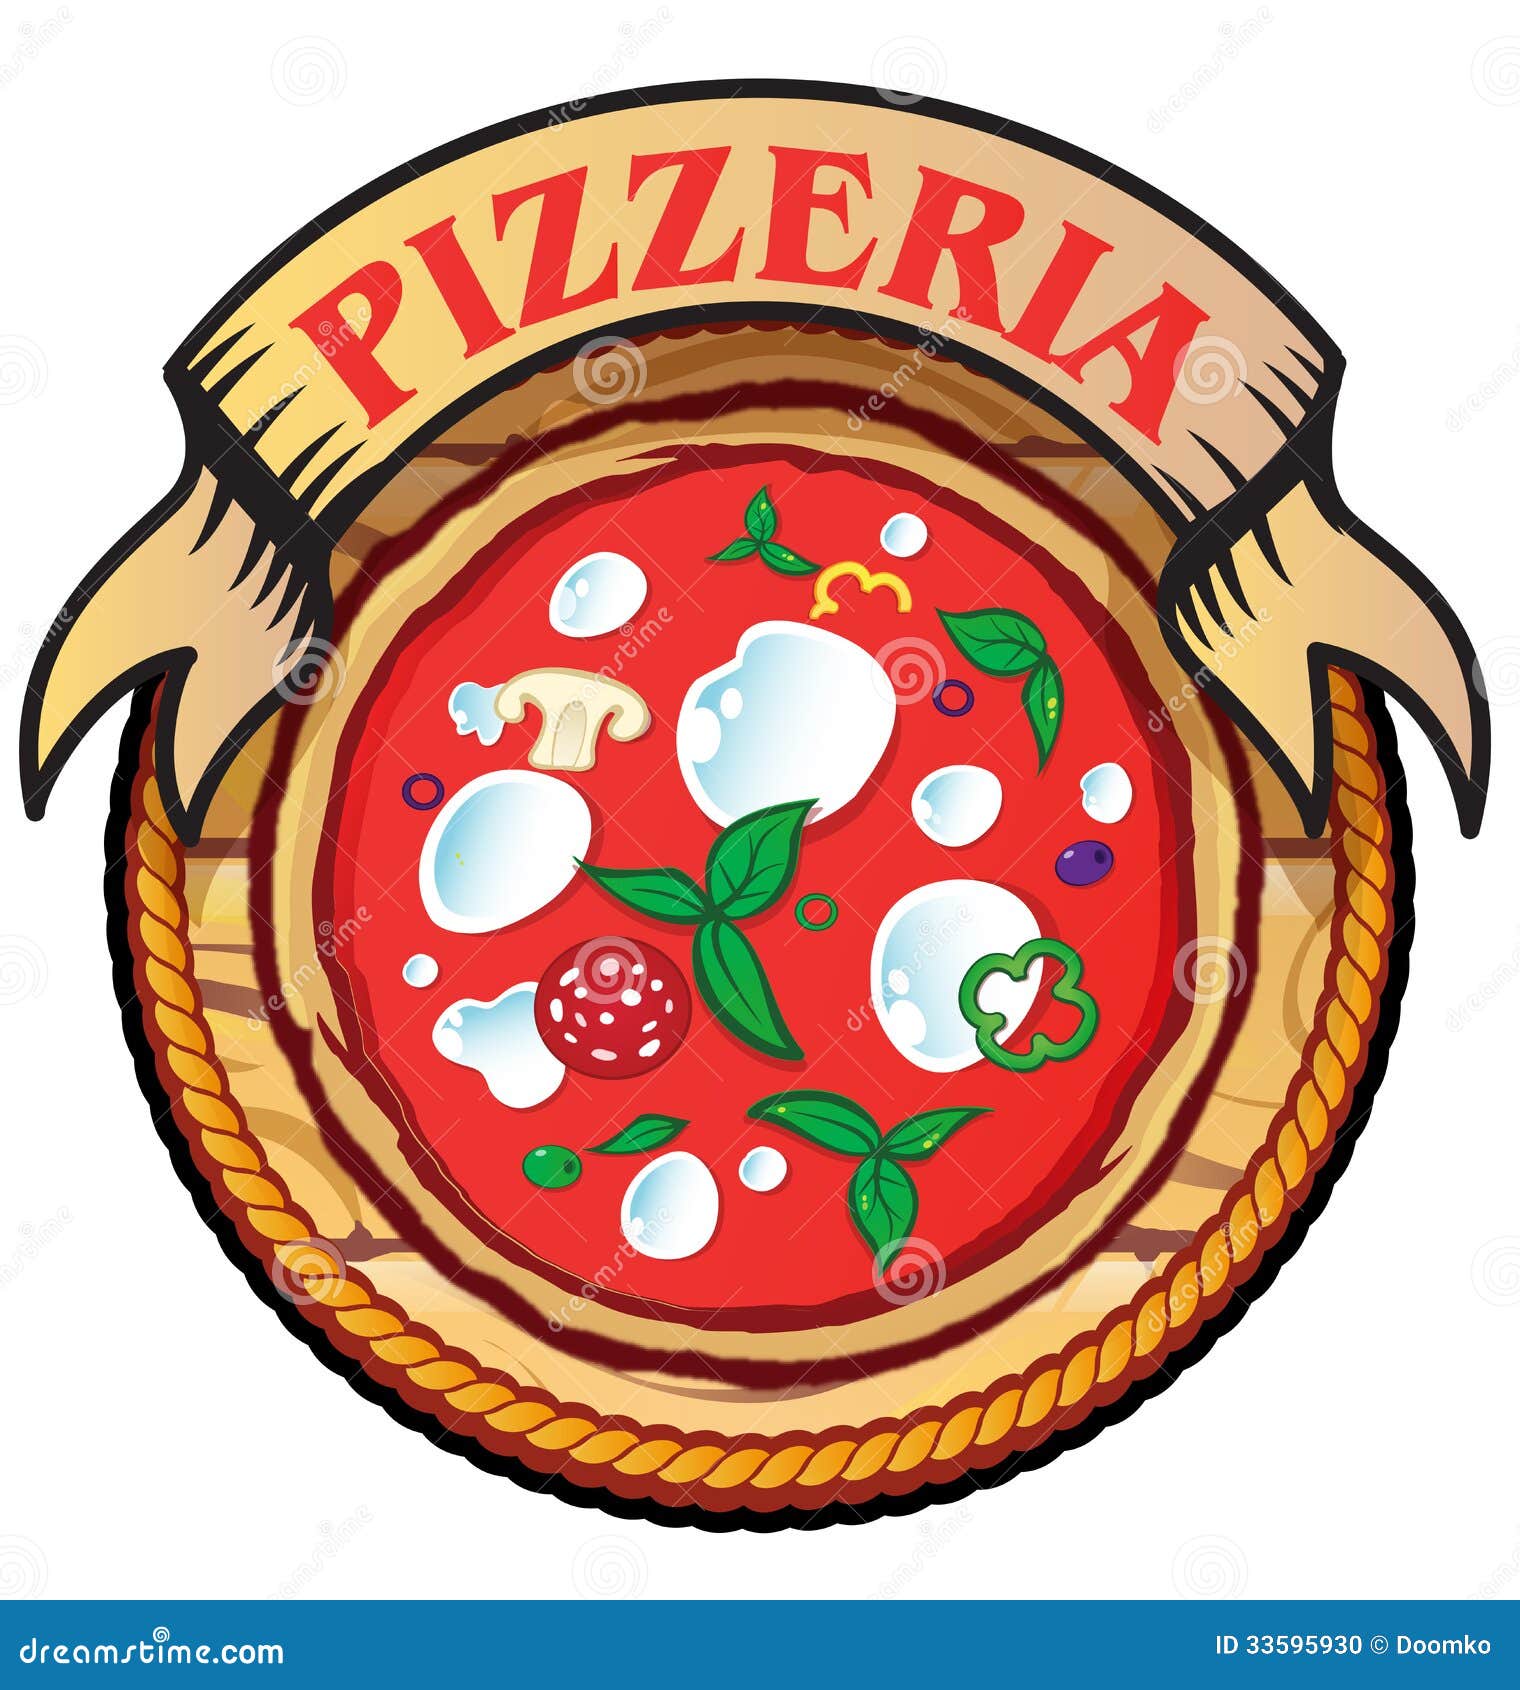 Pizzeria Icon Stock Photo - Image: 33595930